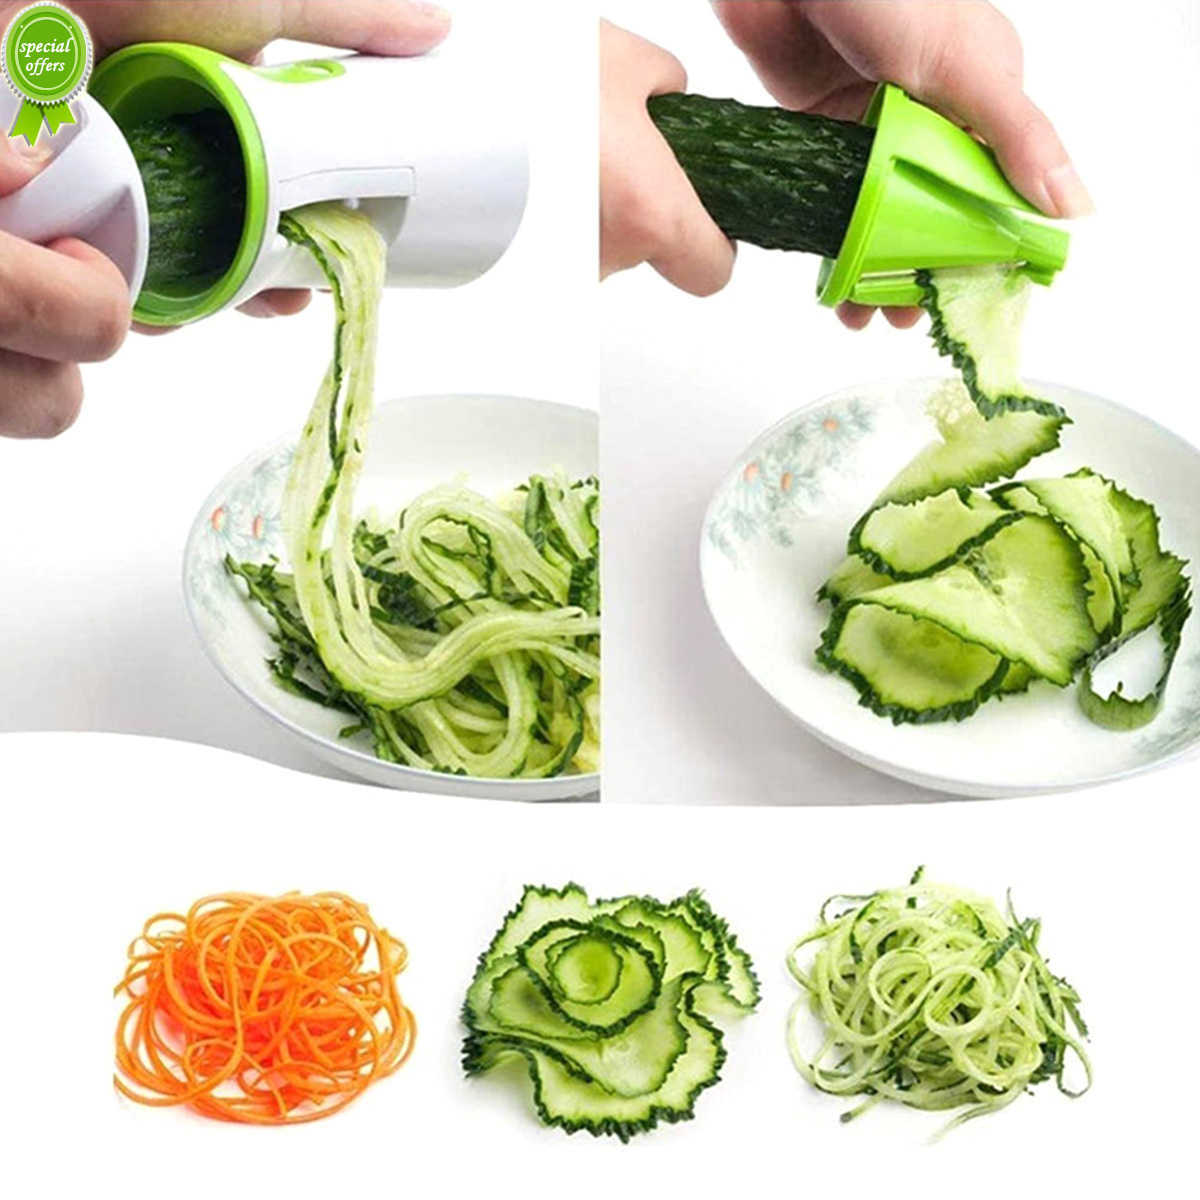 Cortador de legumes espiralizador portátil antiderrapante ralador de legumes 3 em 1 espiralizador de abobrinha para refeições veganas com baixo teor de carboidratos em casa